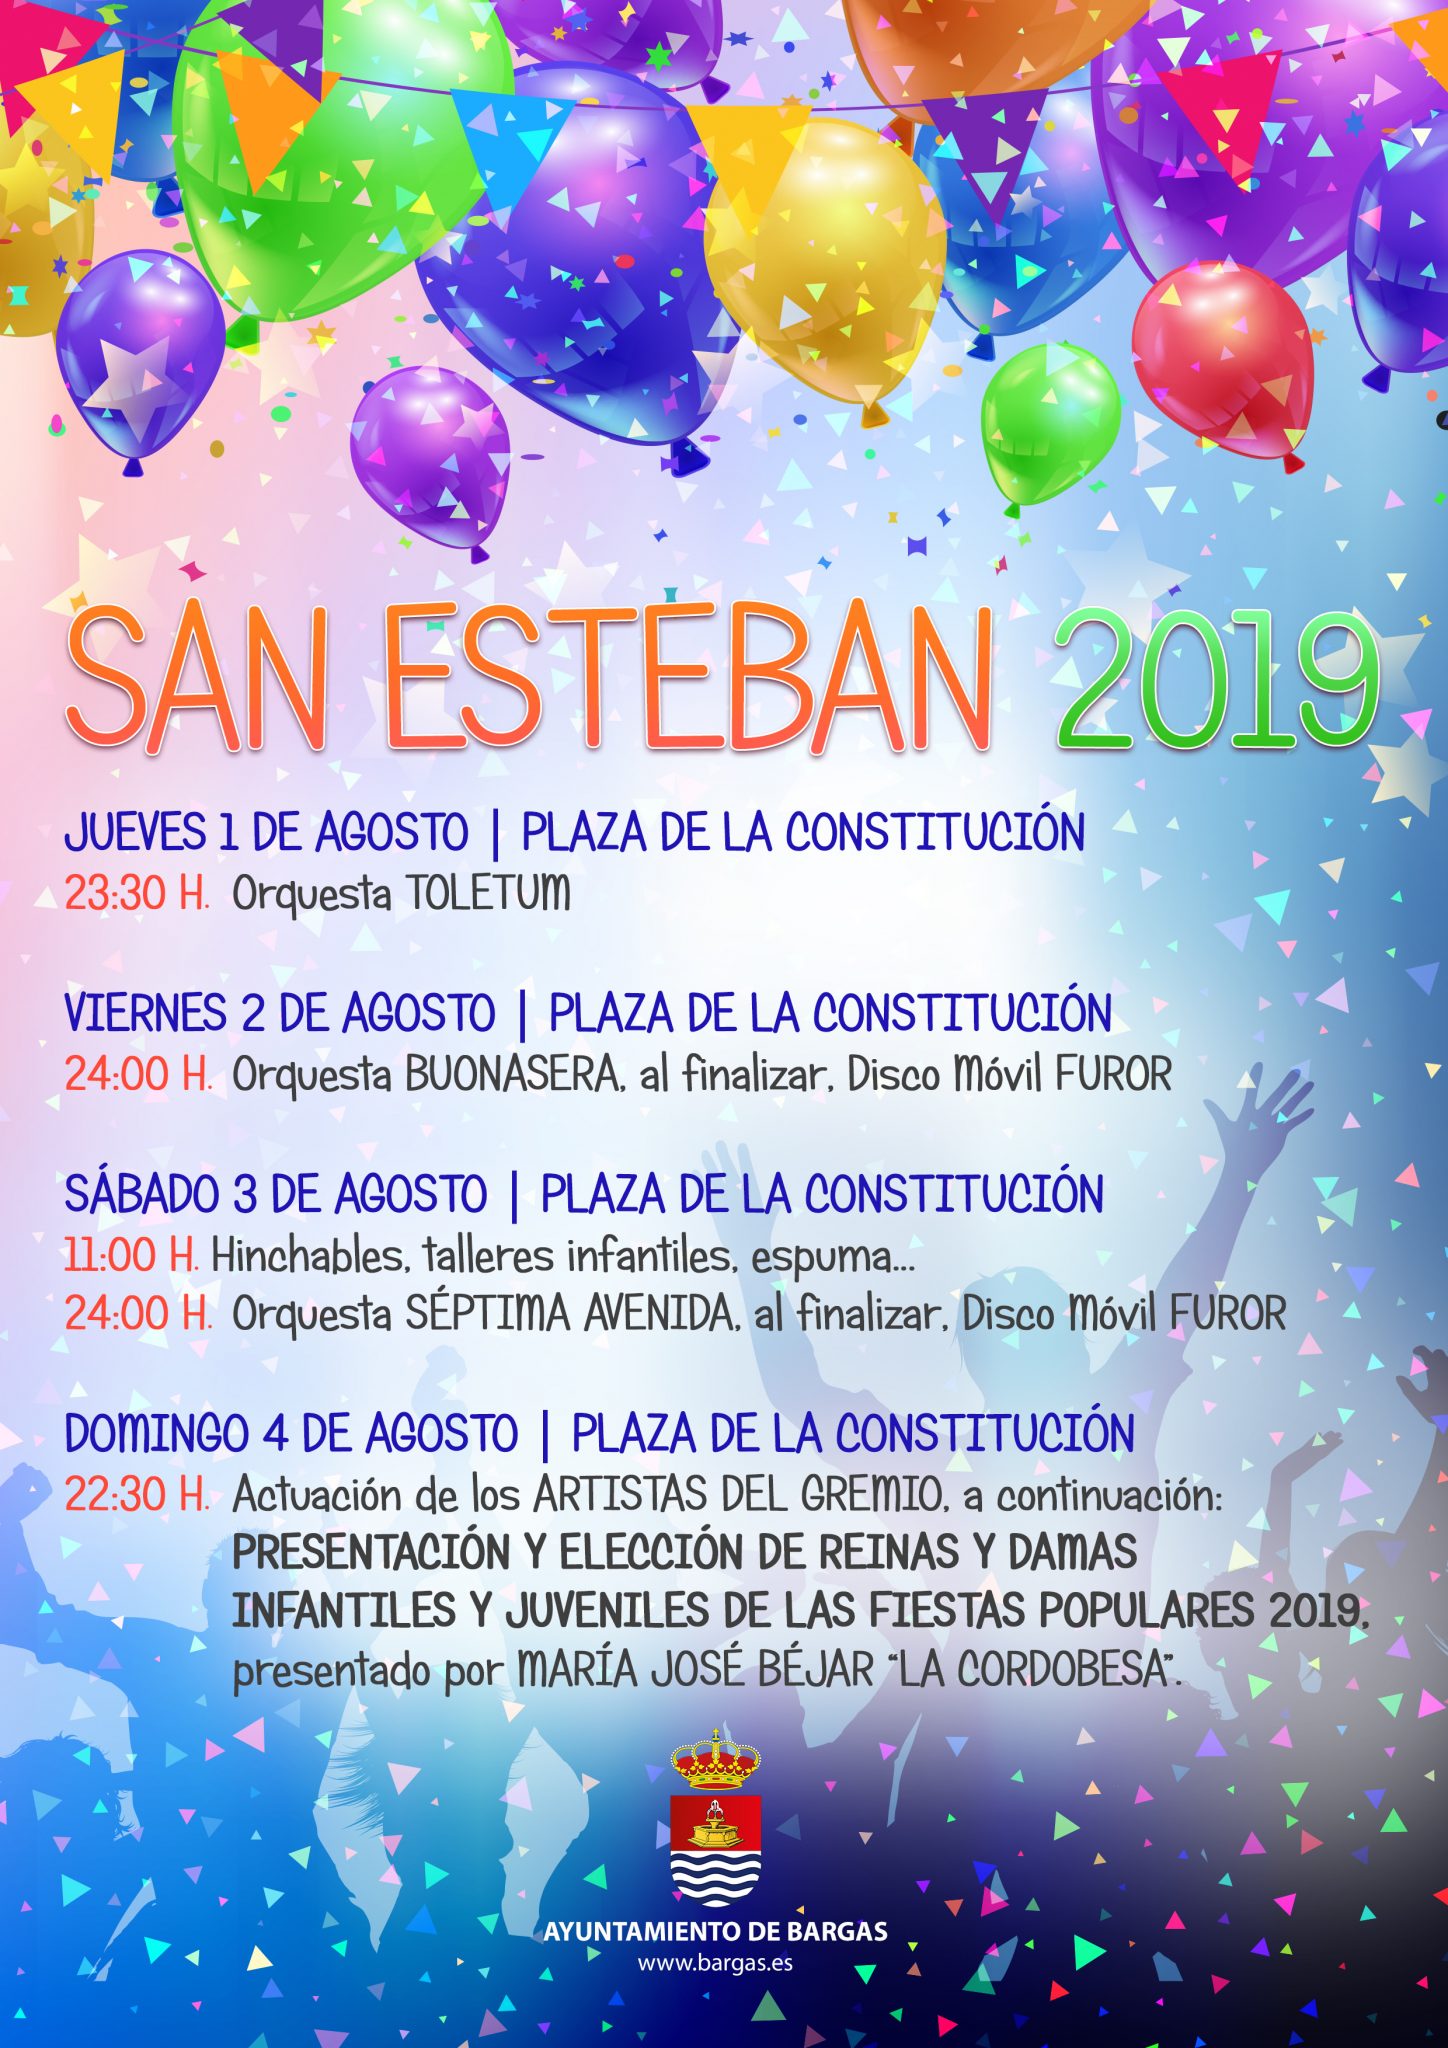 San Esteban 2019